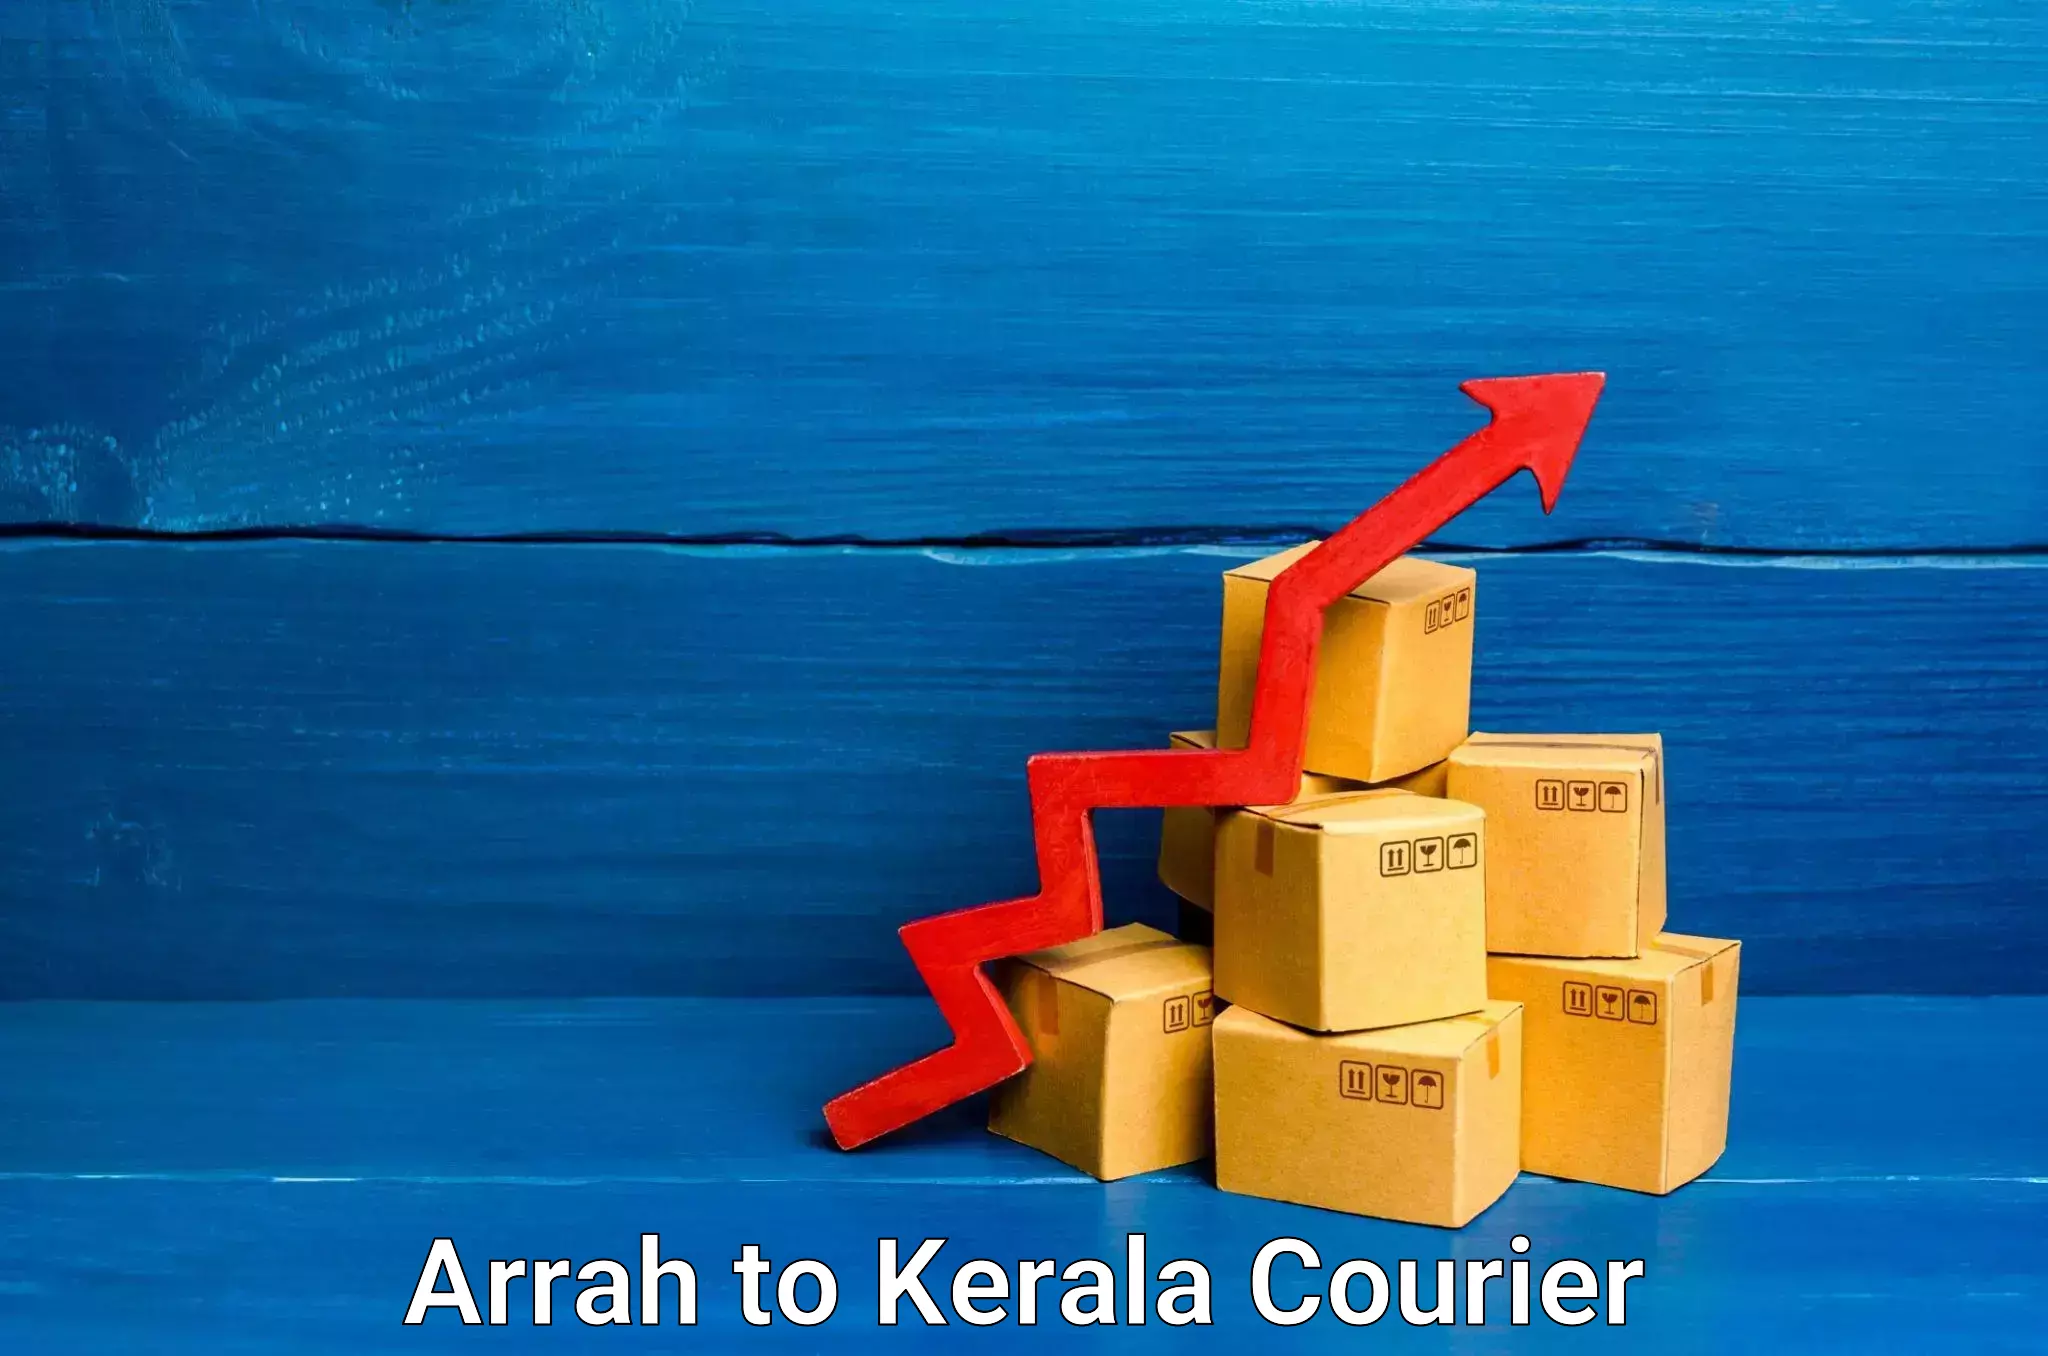 Home shifting experts Arrah to Kerala